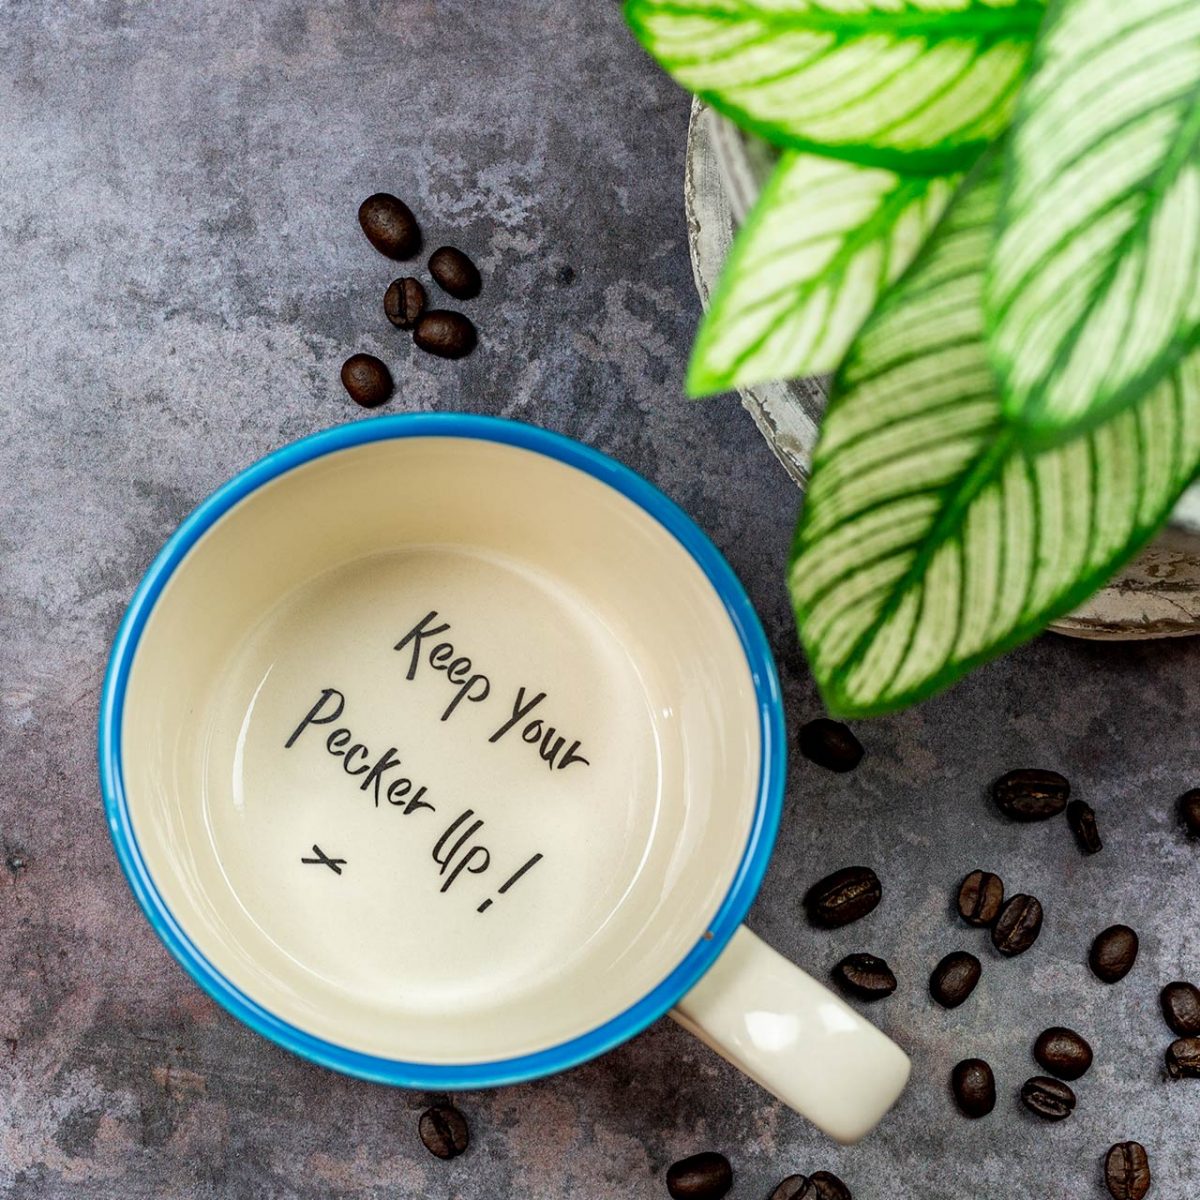 Keep Your Pecker Up - Handmade Mug - Kate Ceramics